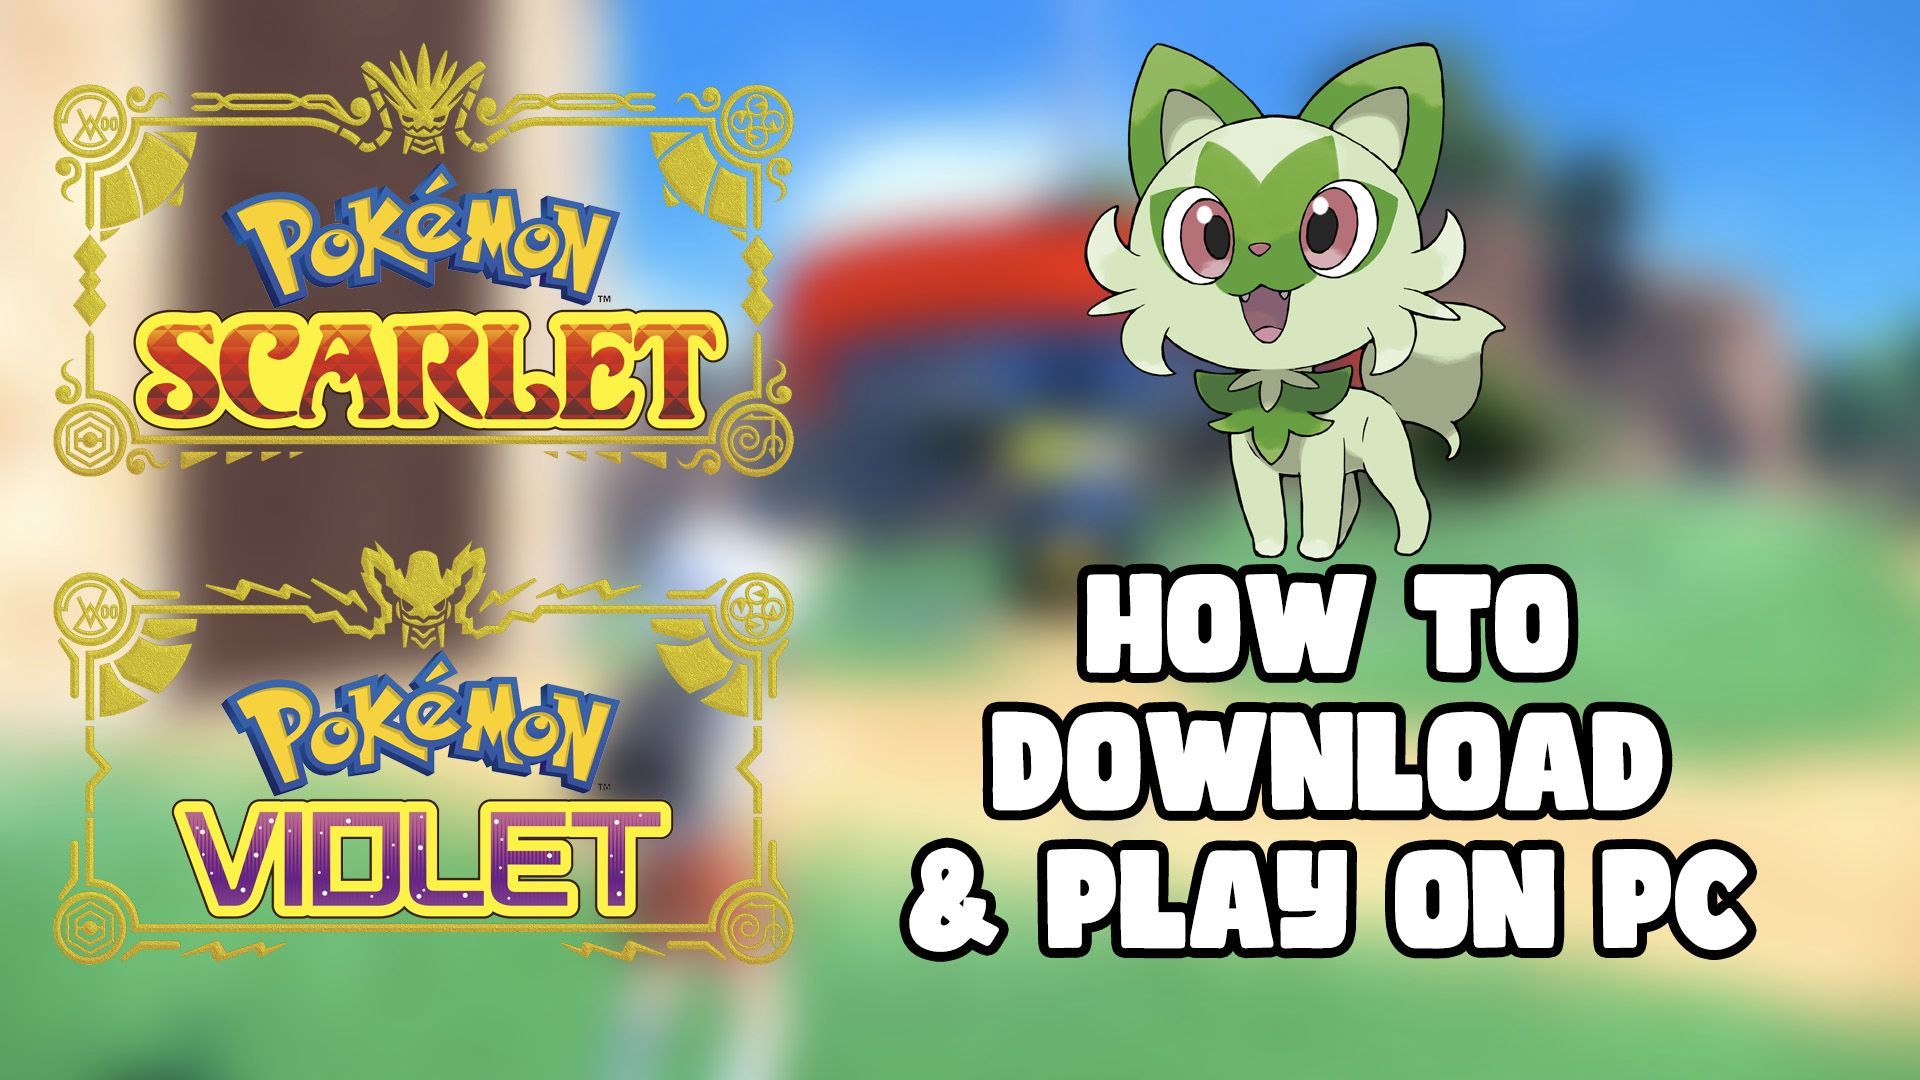 How to Play Pokémon Scarlet & Violet on PC - Ryujinx Switch